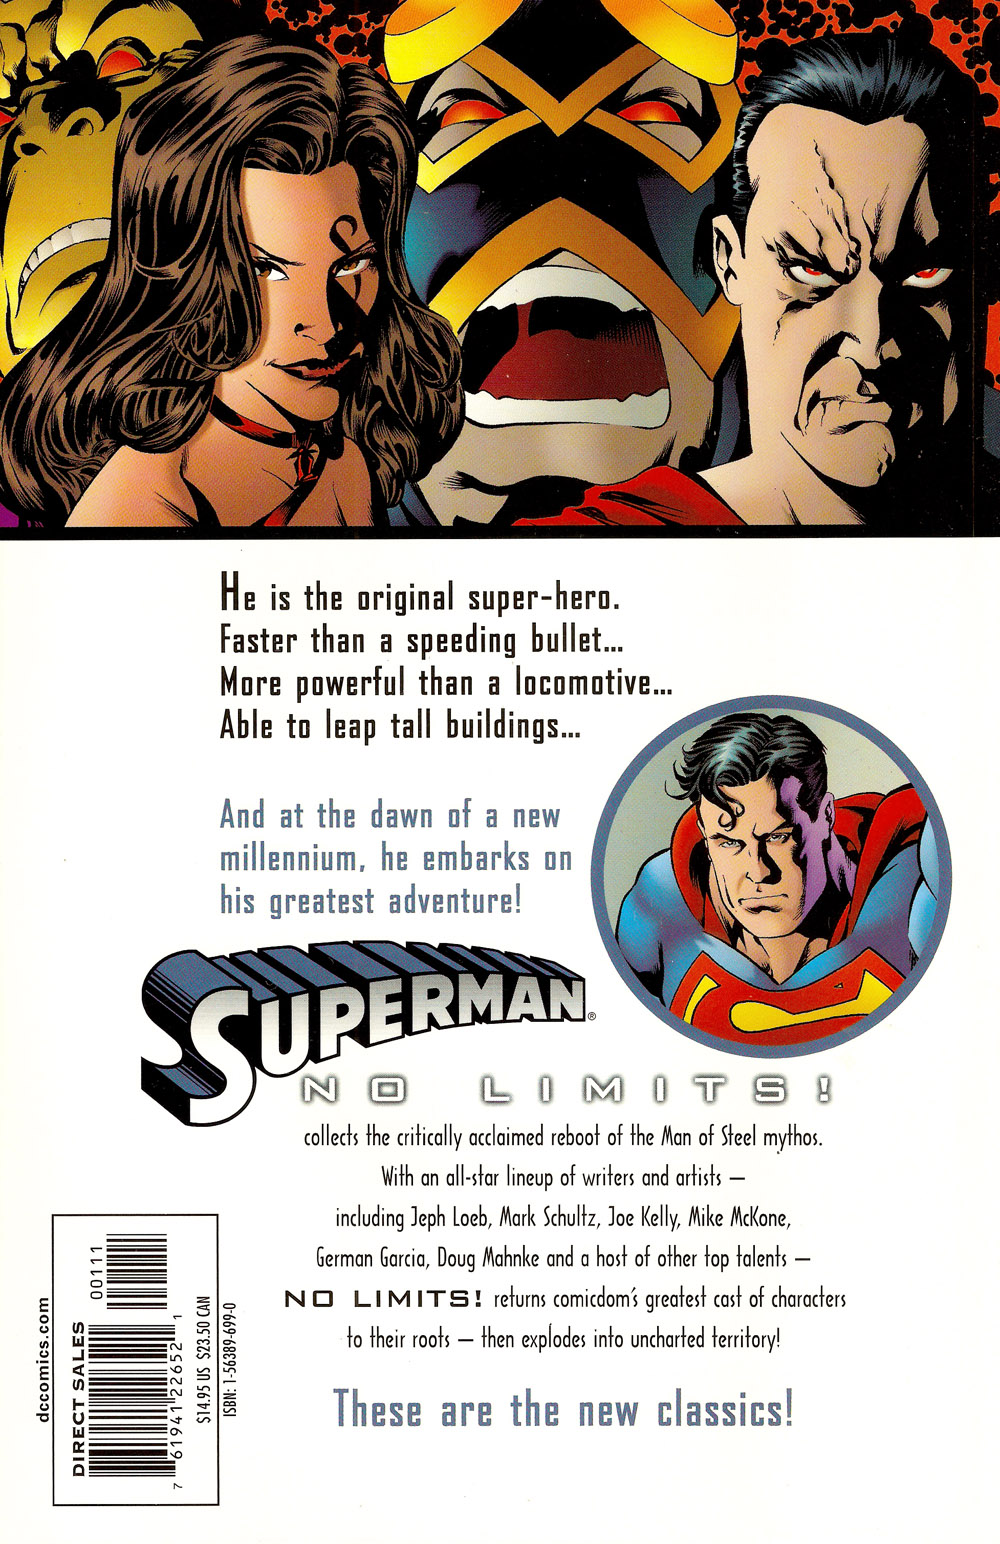 Superman Vol. 1 No Limits B